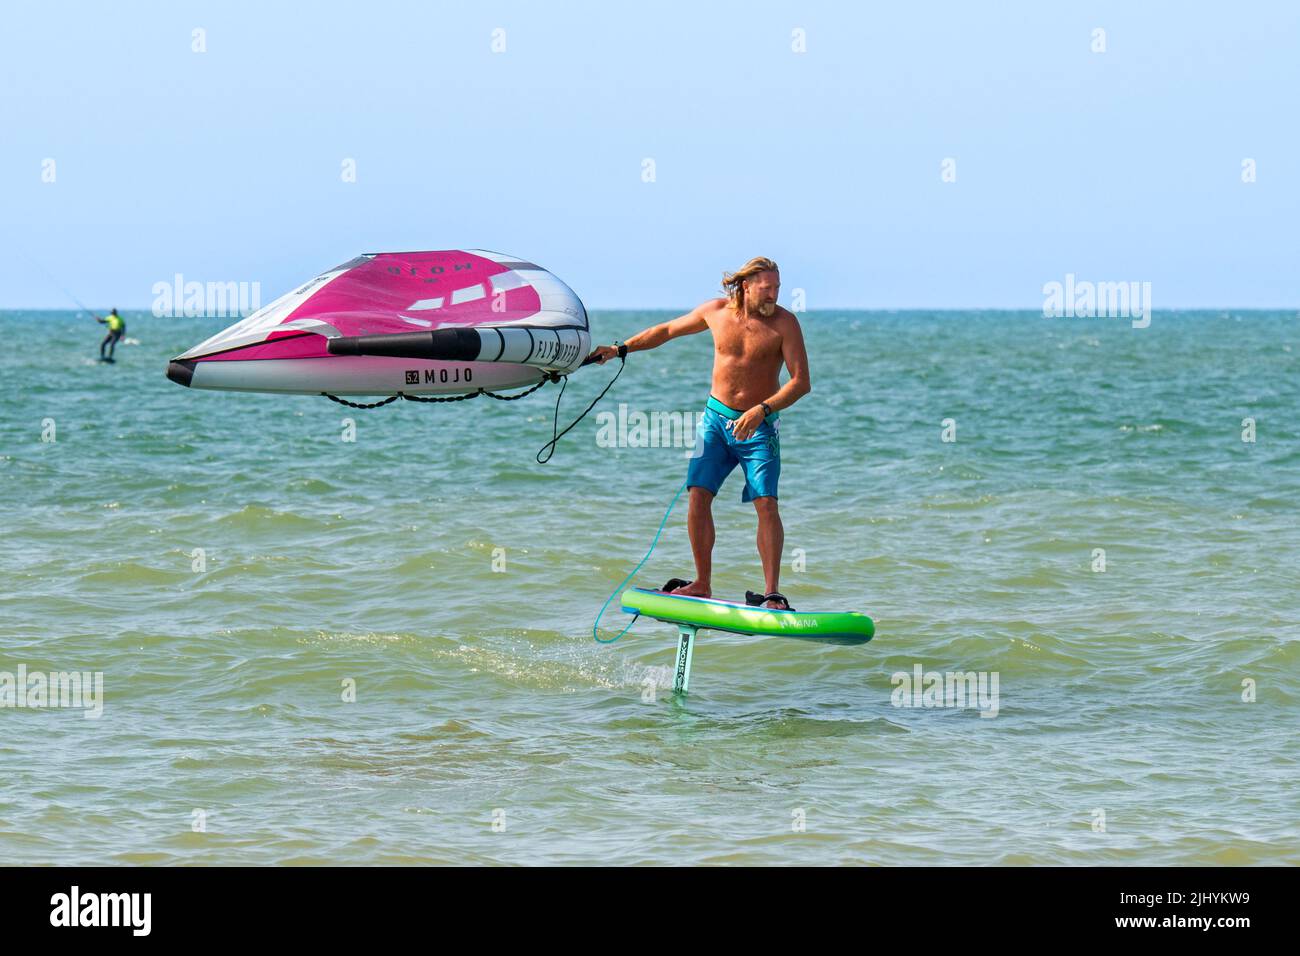 Alare / alare surf sul Mare del Nord mostra wingboarder / alare boarder in piedi su foilboard / aliscafo e tenendo un'ala gonfiabile Foto Stock